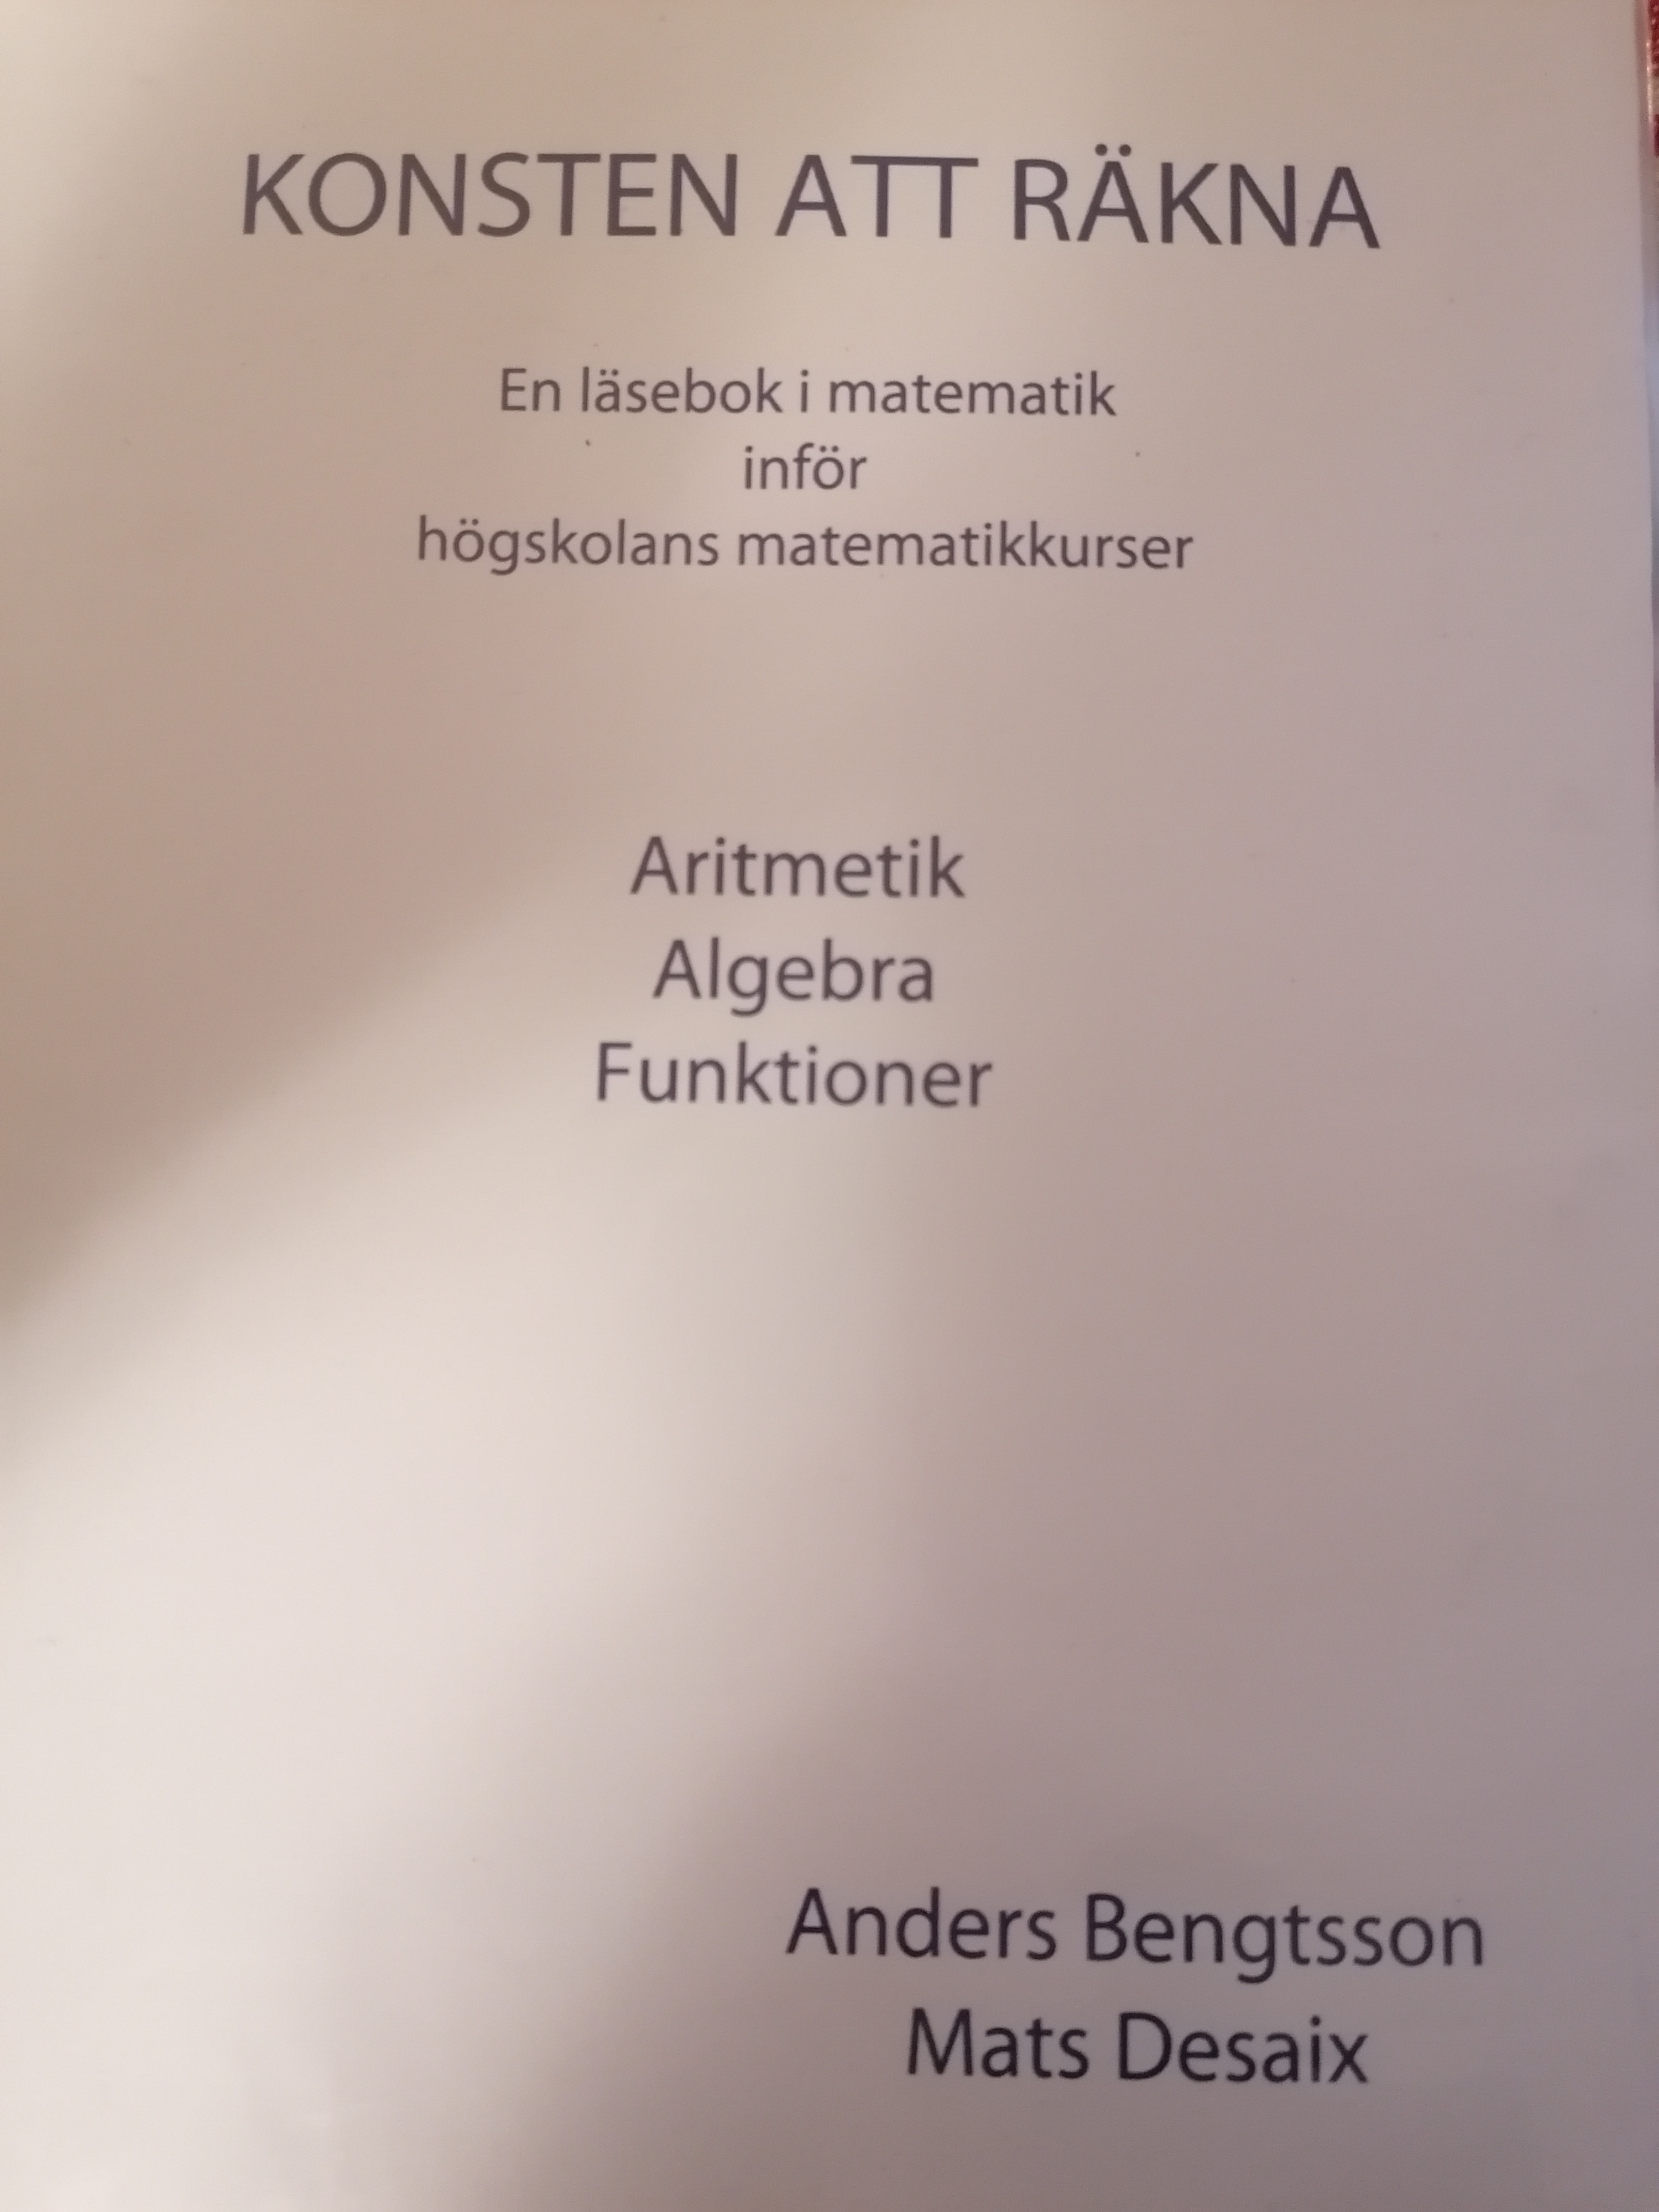 Konsten att räkna; Bengtsson Desai; 2015